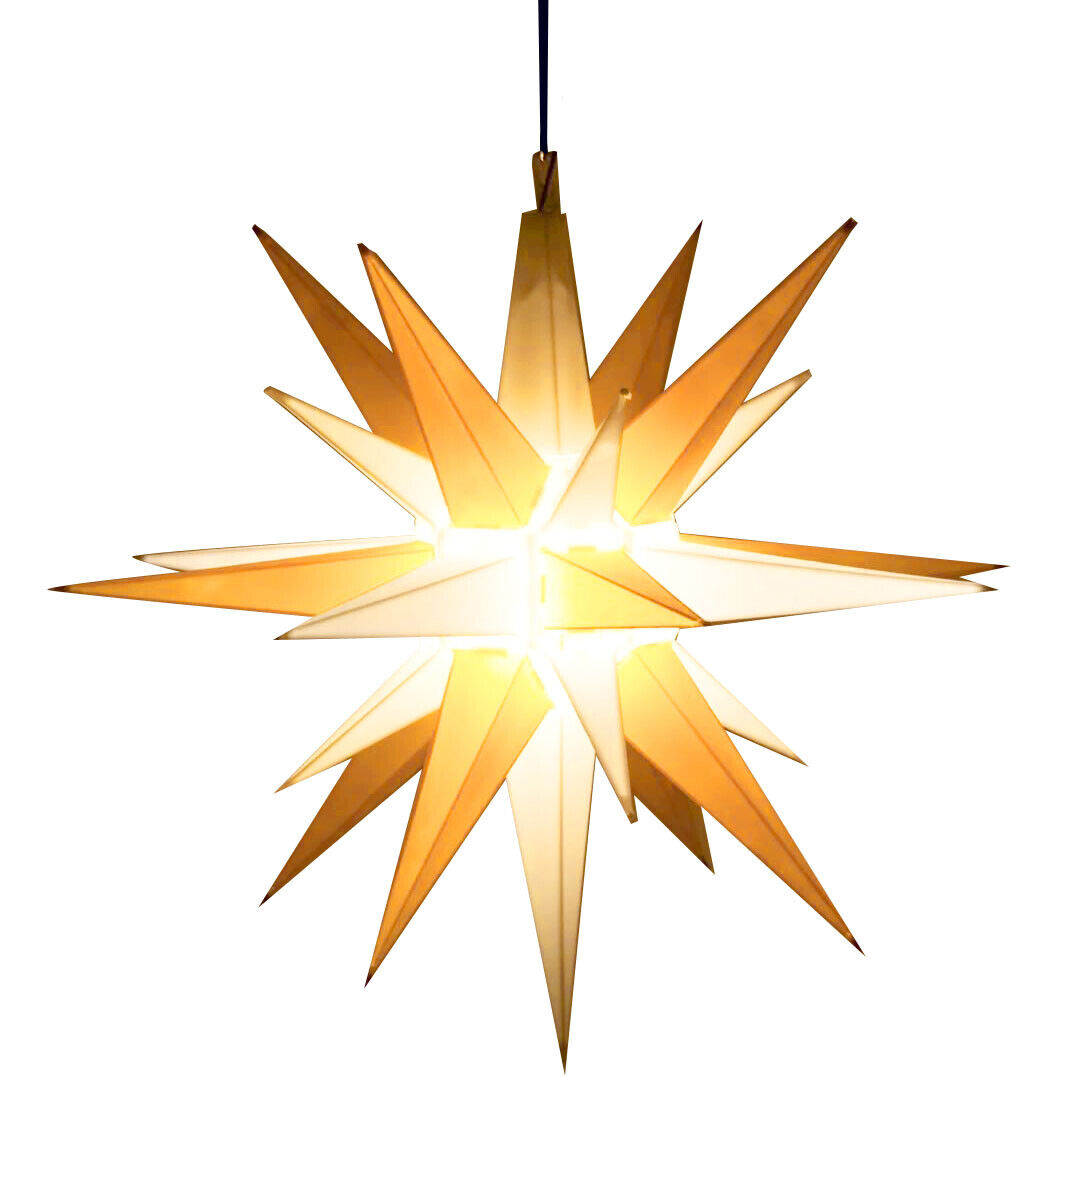 21” Moravian Star  - Hanging Outdoor Christmas Star Light - Bright Porch Light